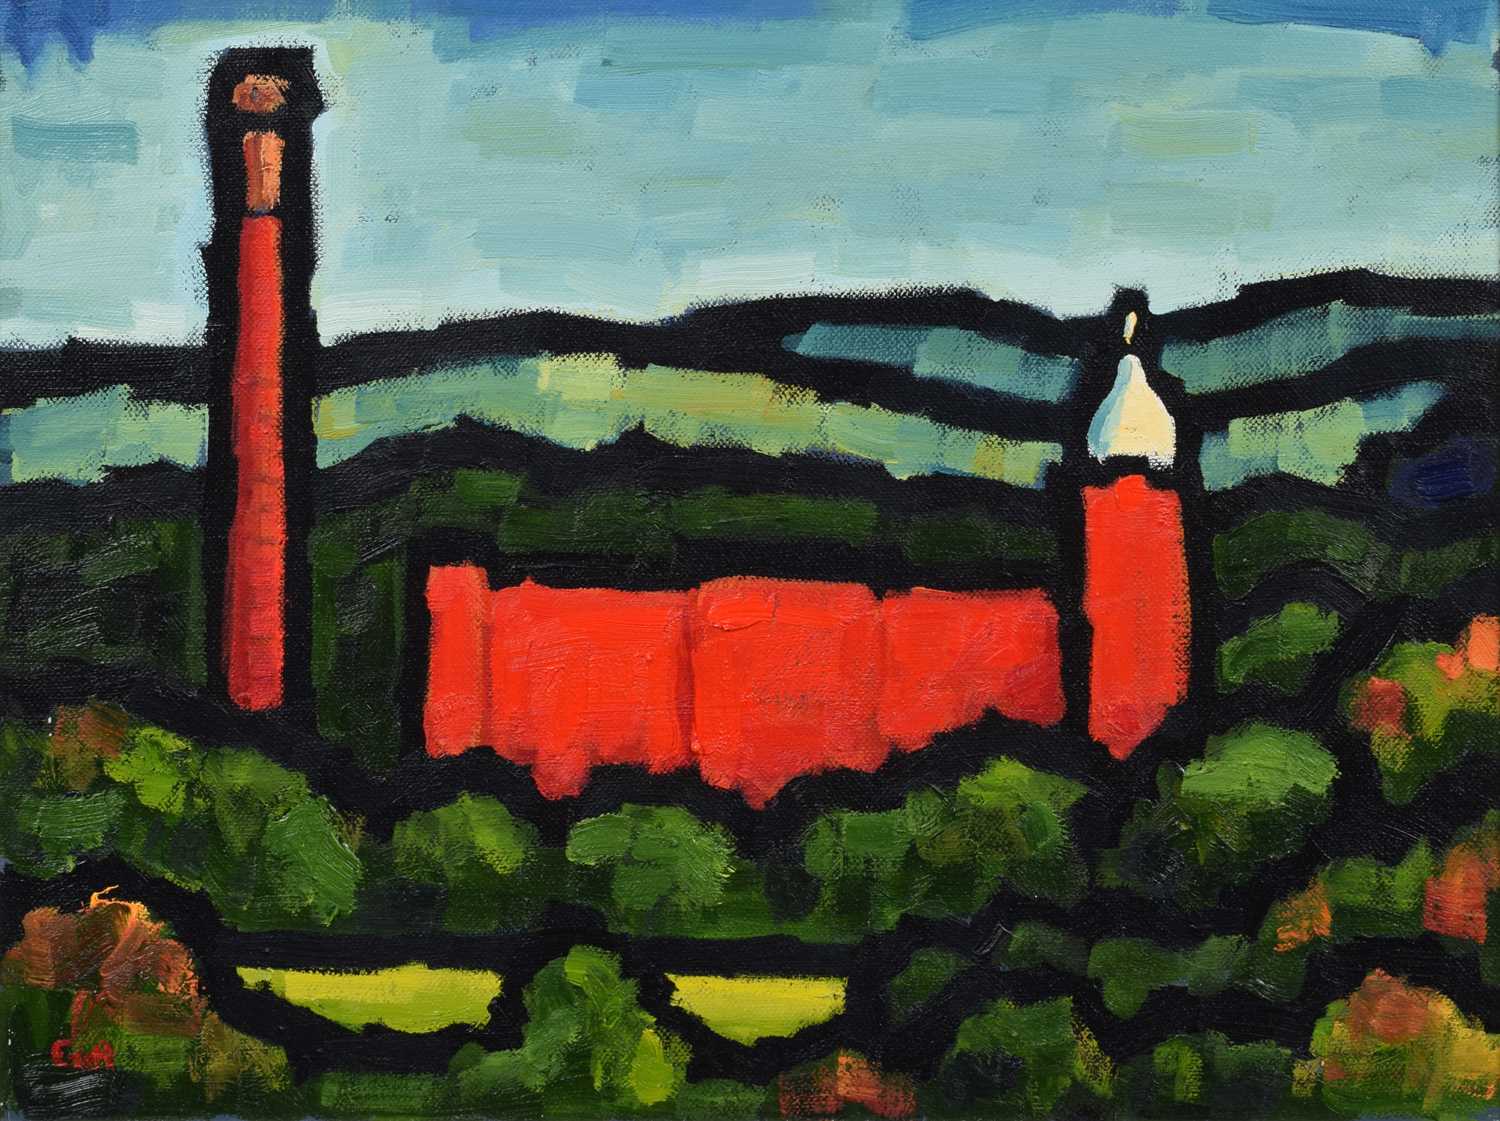 Malcolm Croft (British 1964-), "Pear Mill, Autumn", oil.